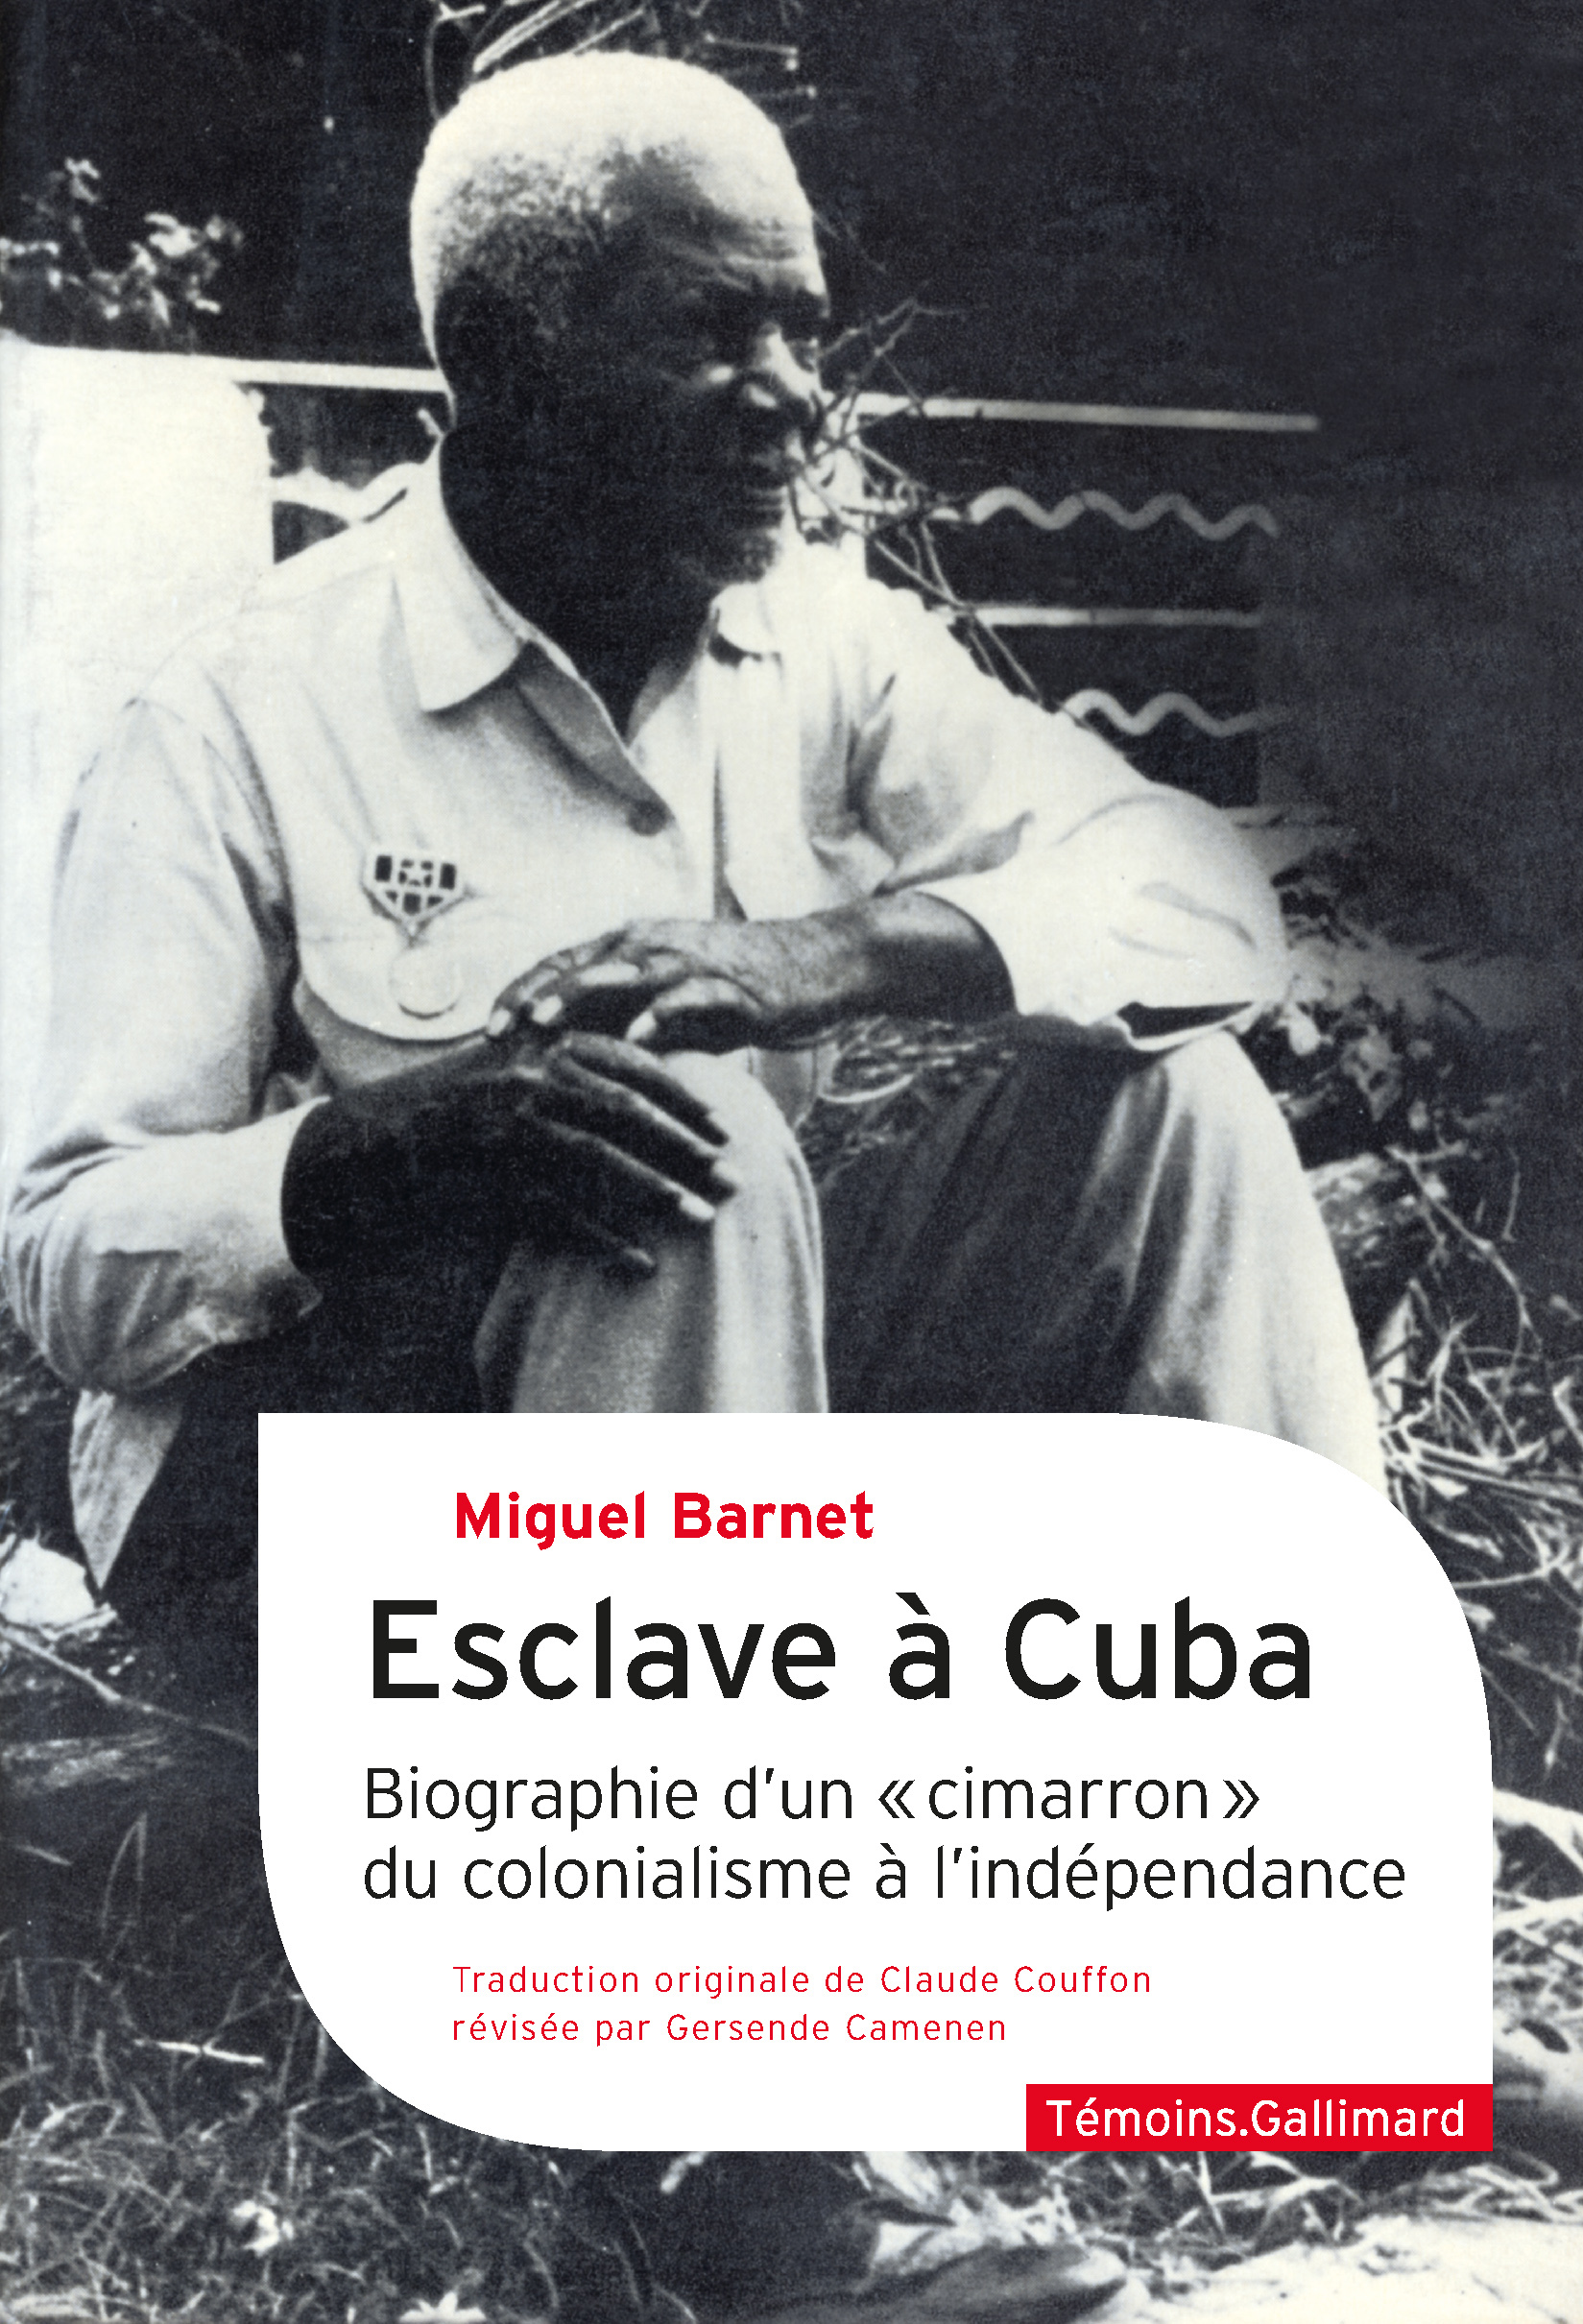 Esclave à Cuba, Biographie d'un "cimarrón", du colonialisme à l'indépendance (9782072968198-front-cover)